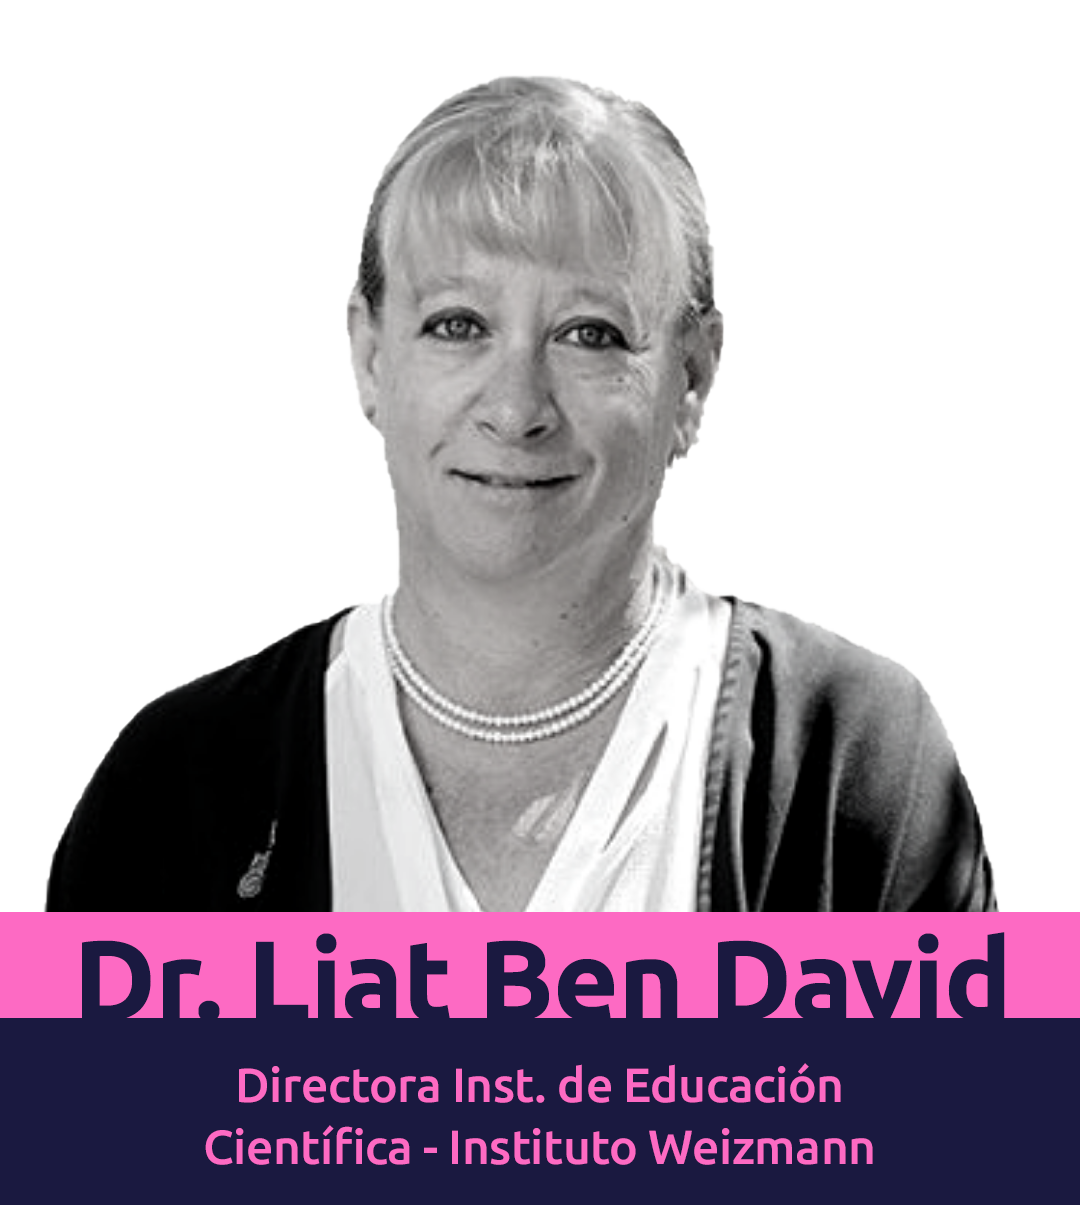 Dr. Liat Ben David